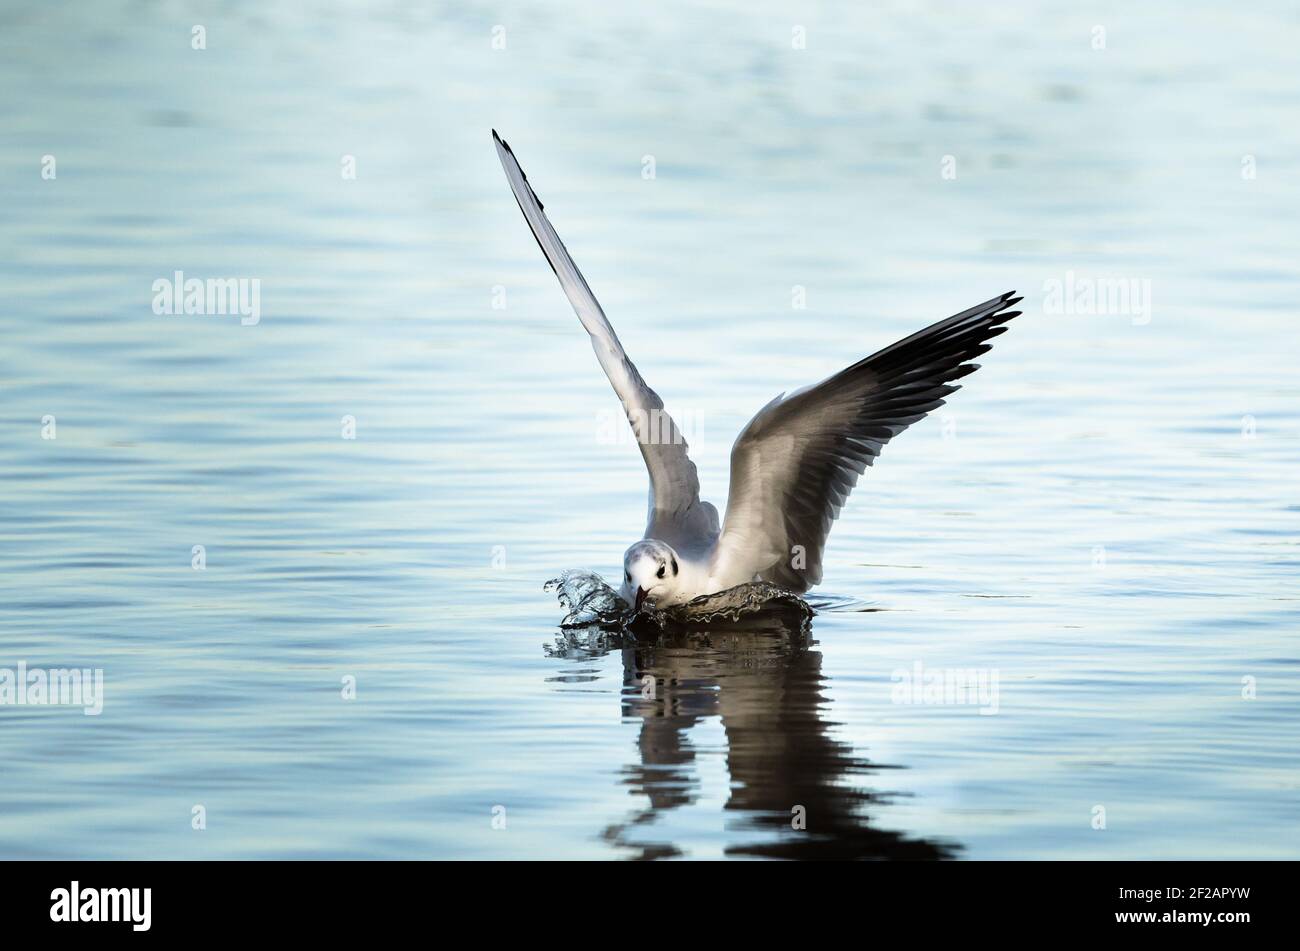 Black headed Gull alighting on water. Stock Photo